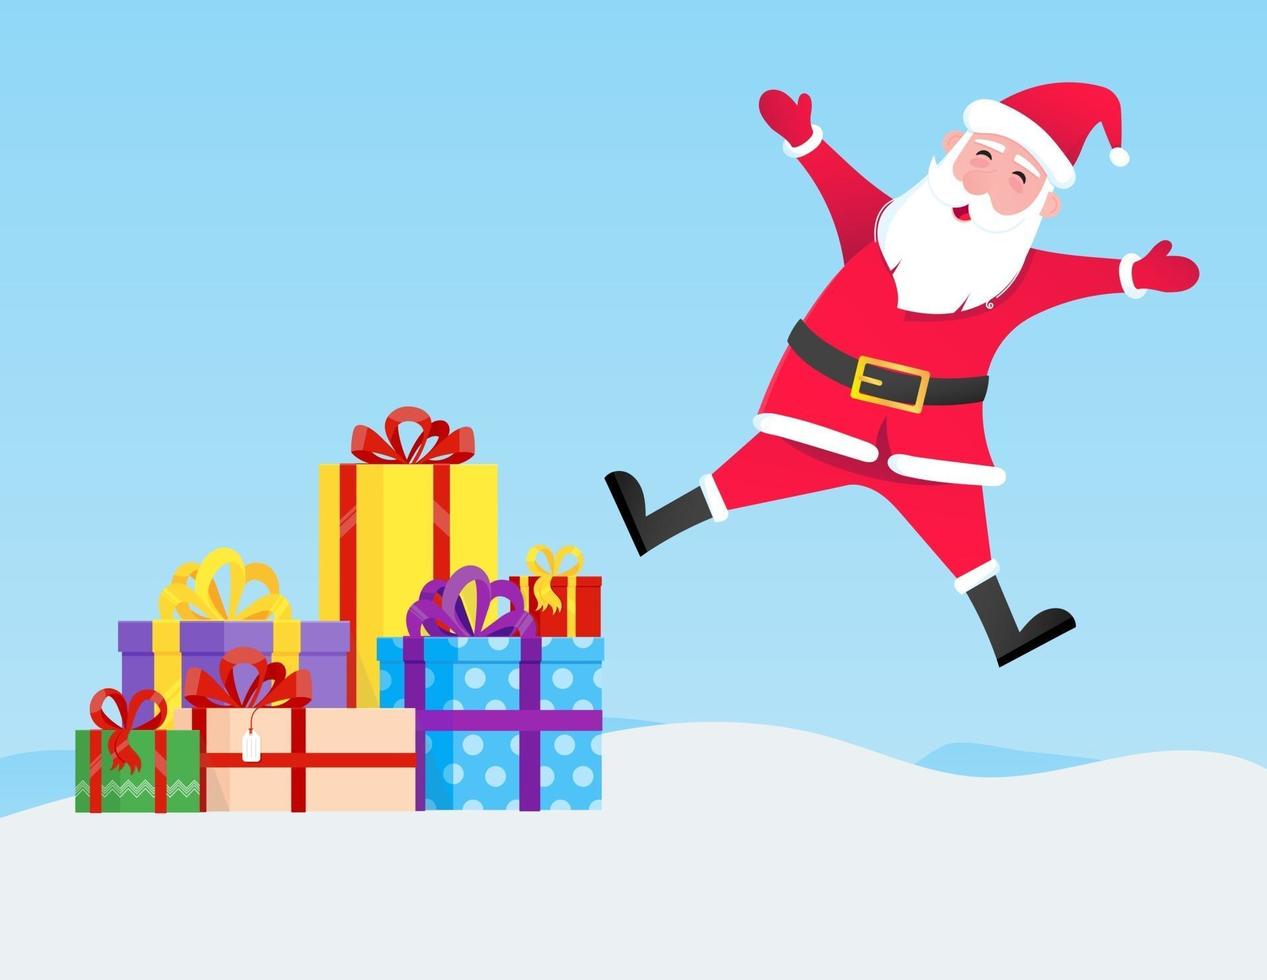 Papai Noel pula com barba de chapéu e personagem de estilo simples com rosto sorridente vetor